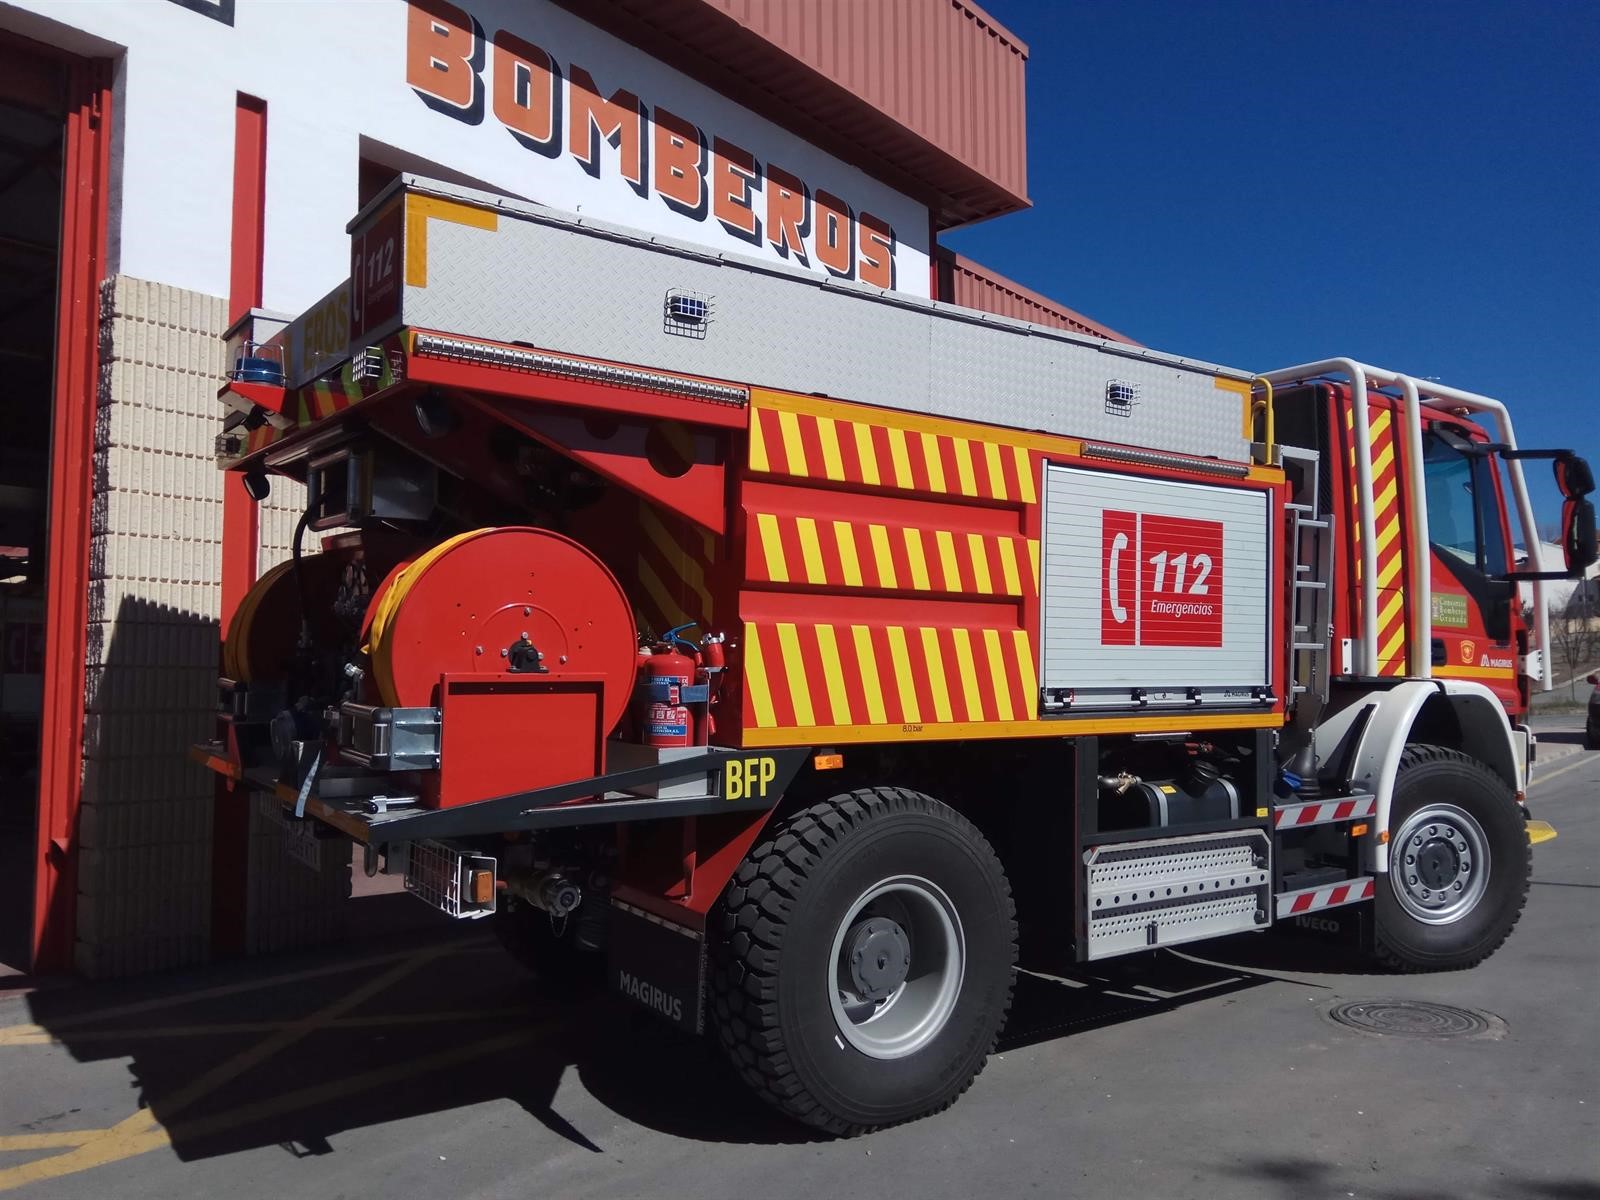 La Diputación desmiente que tenga que poner un retén de bomberos que asista a Sierra Nevada